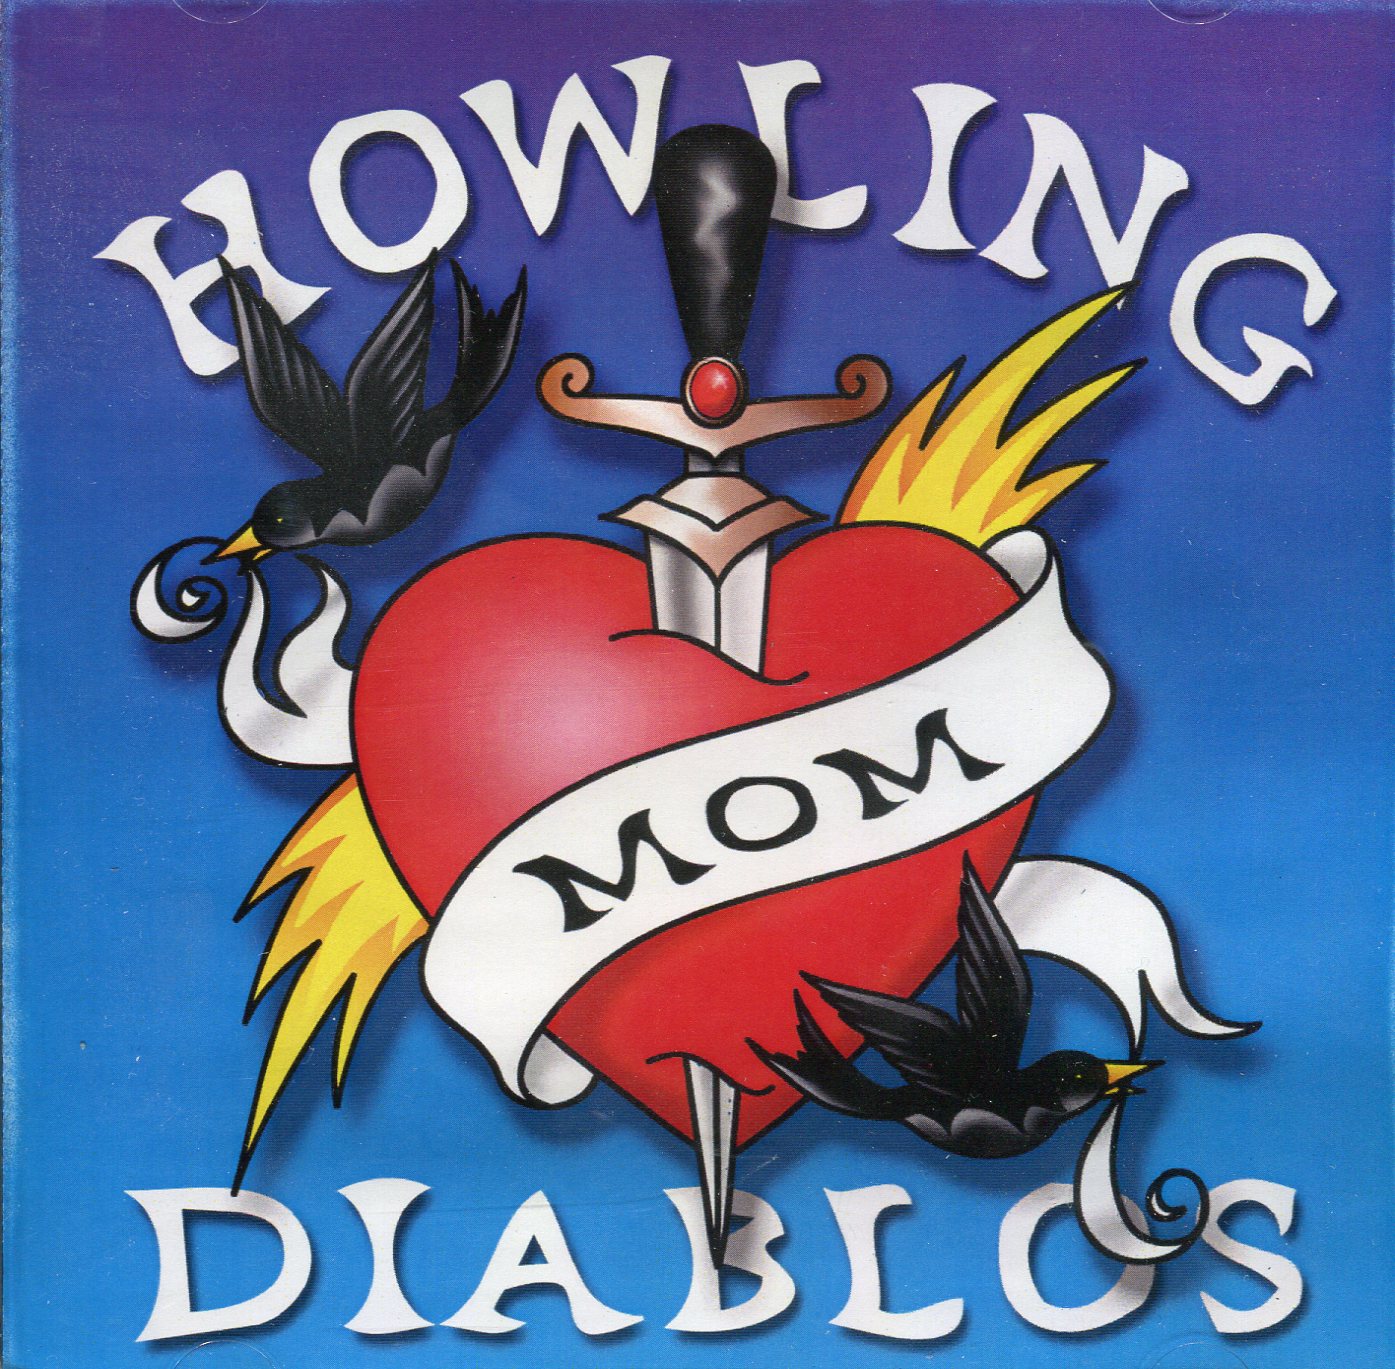 Howling Diablos - Mom (album)